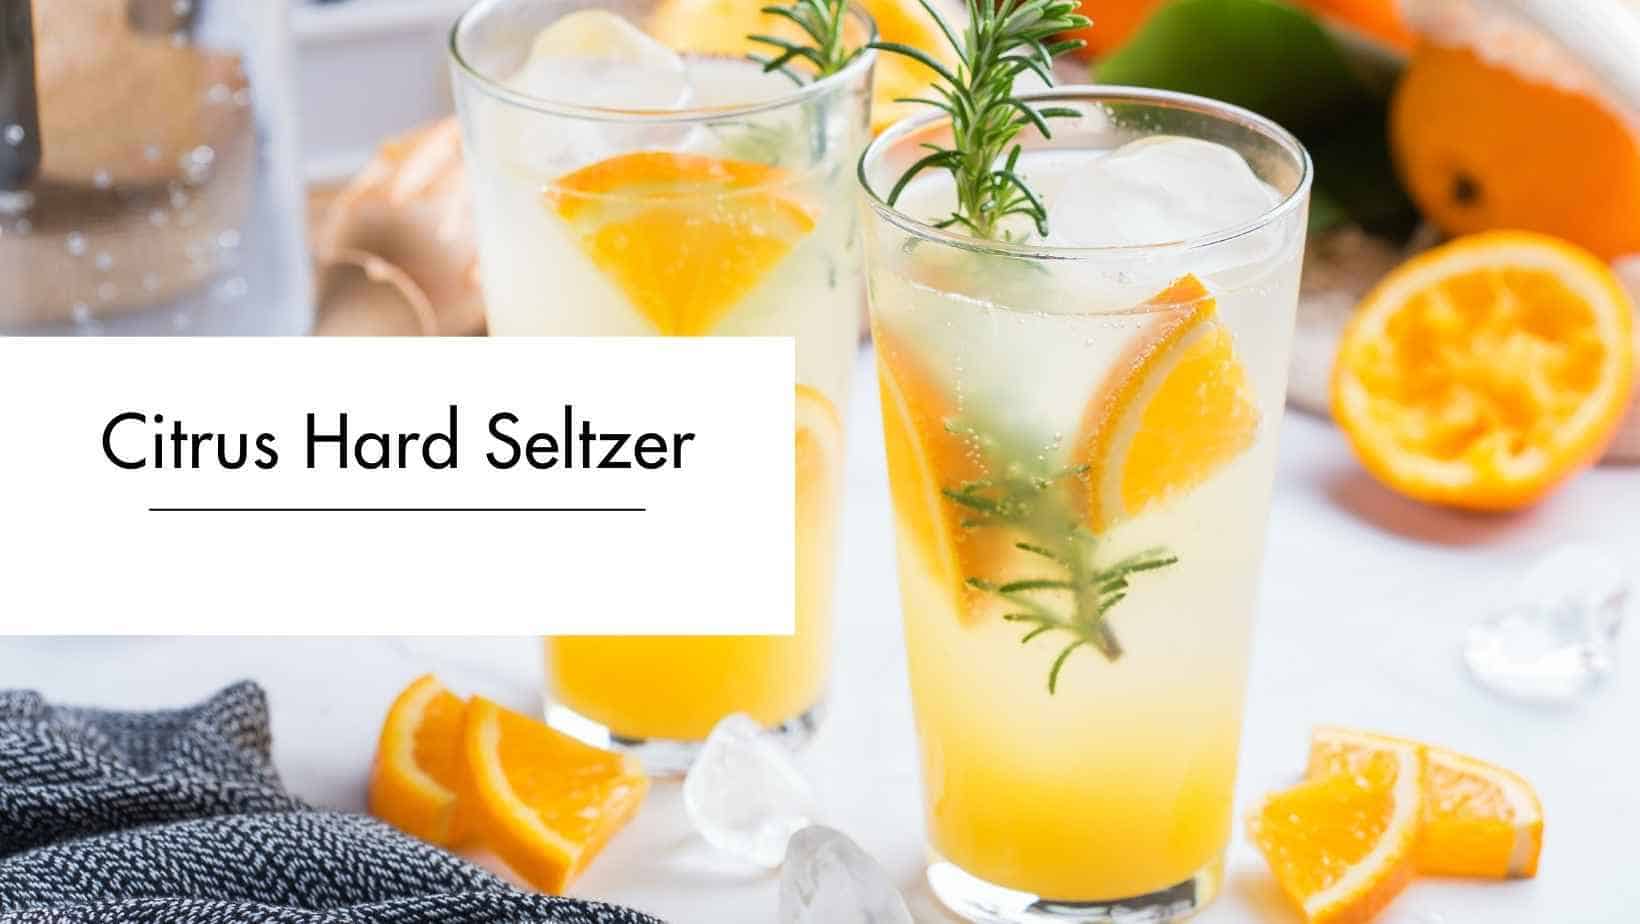 Citrus Hard Seltzer